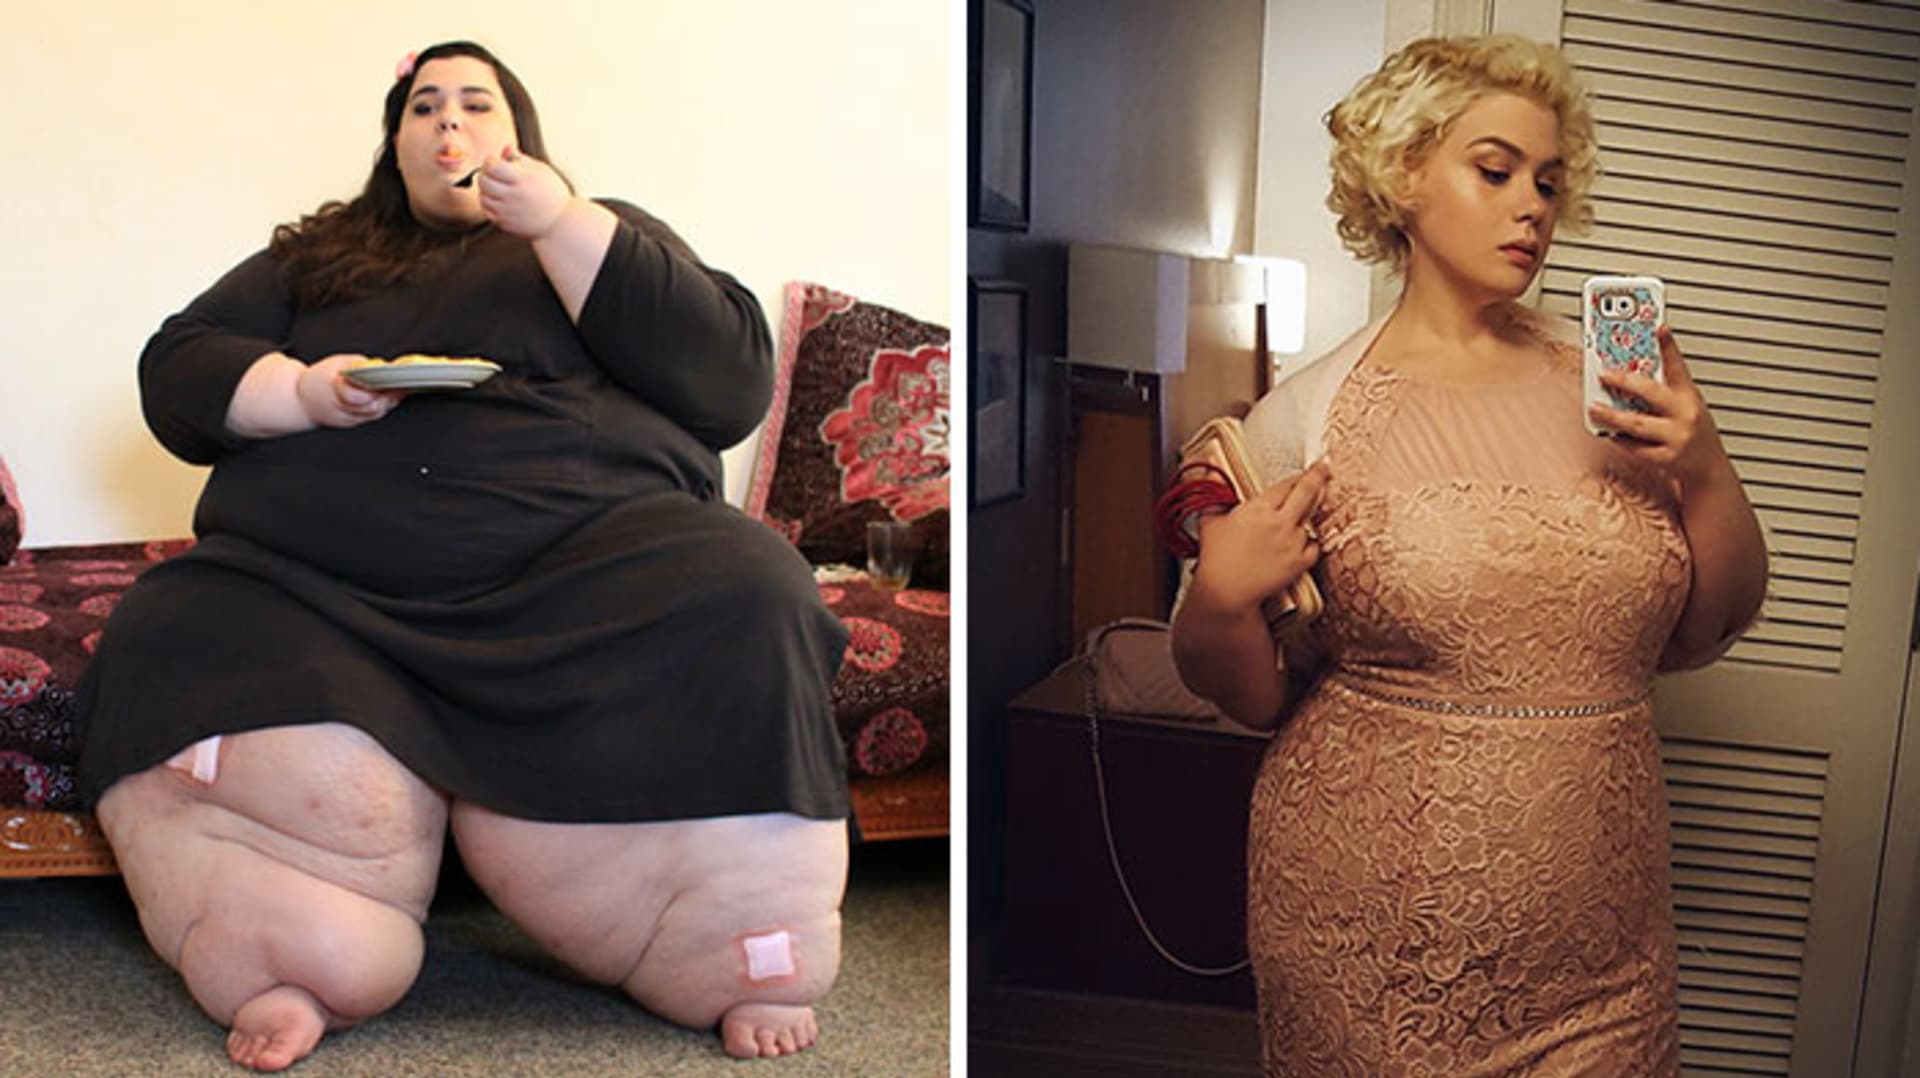 Amber Rachdi vážila před svou proměnou 300 kg, nyní je spokojená se svými 107 kg